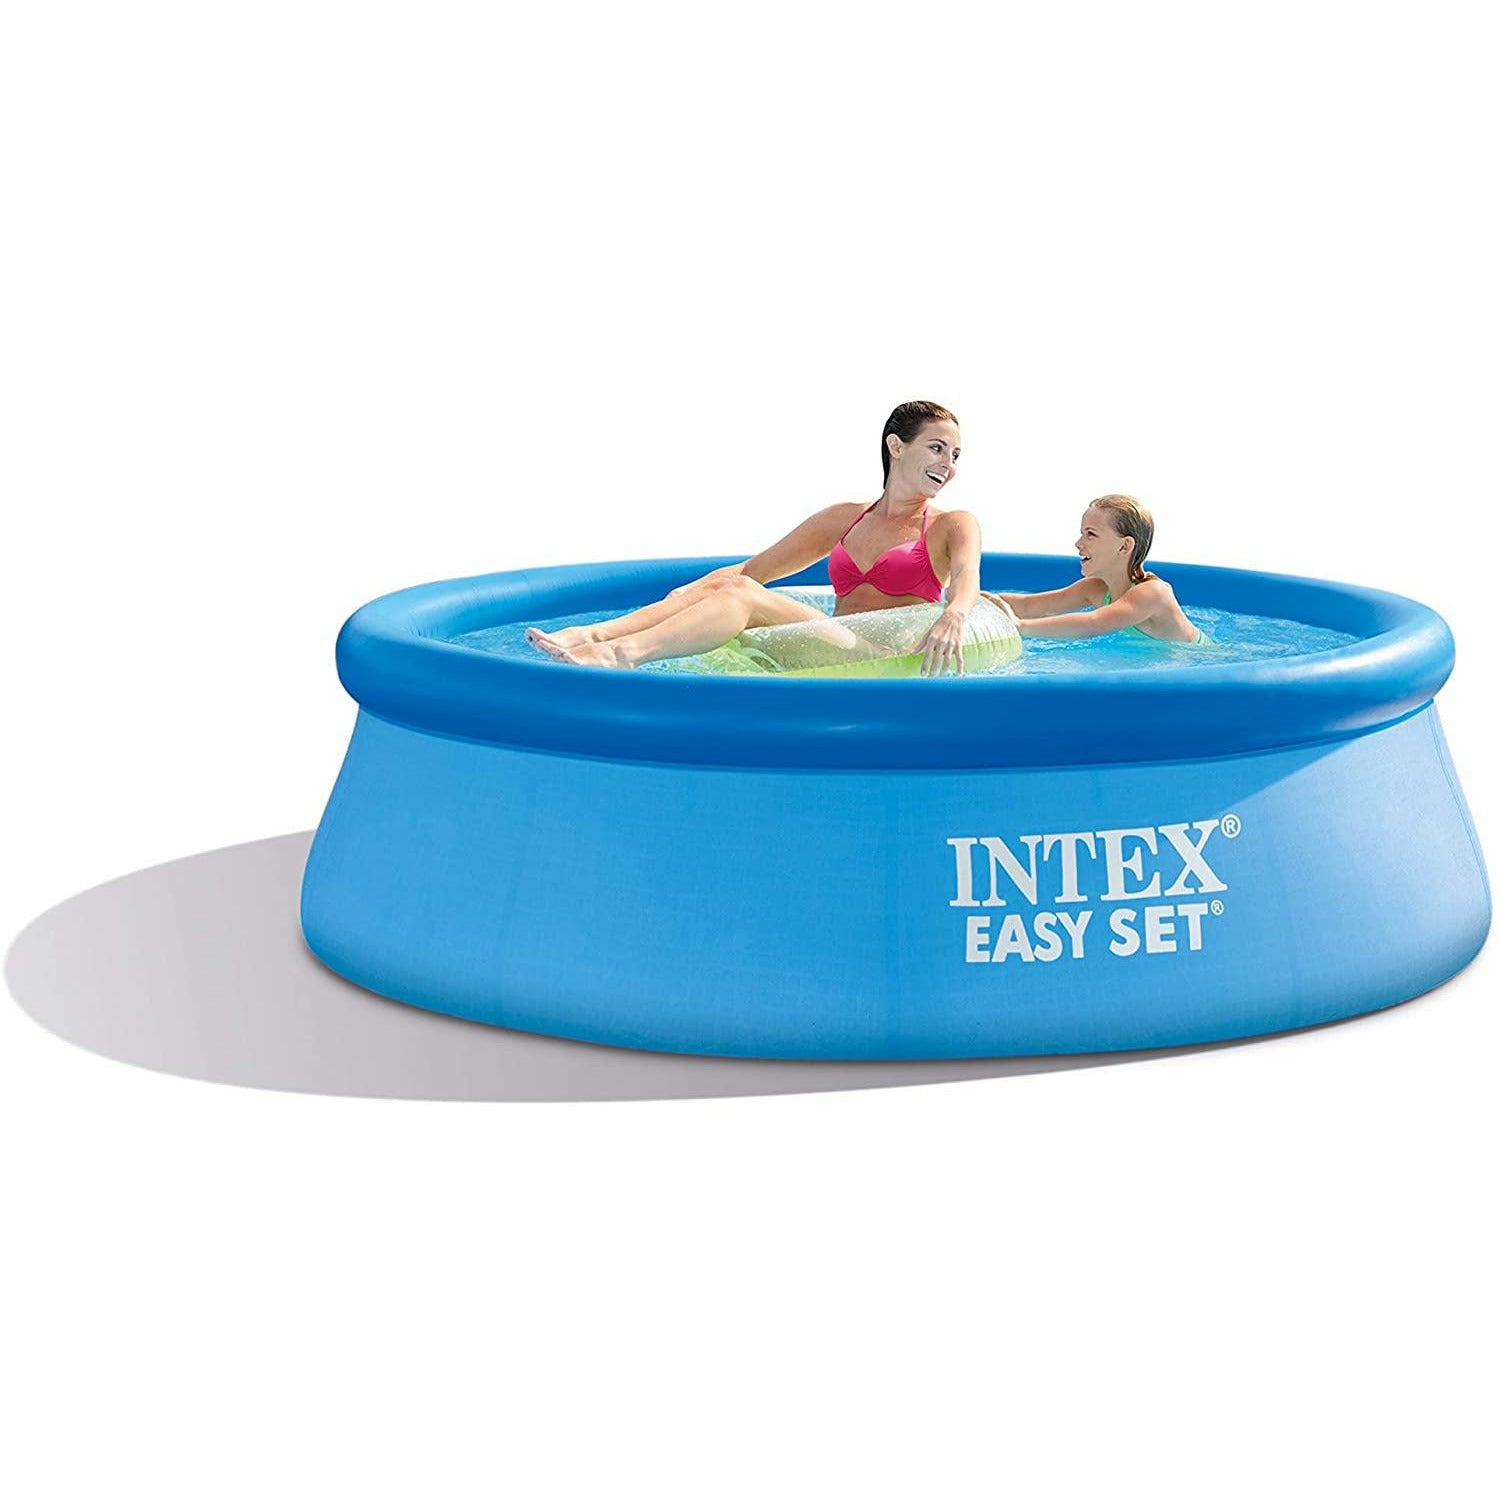 Intex Easy Set Pool 8x30 - Pelican Shops